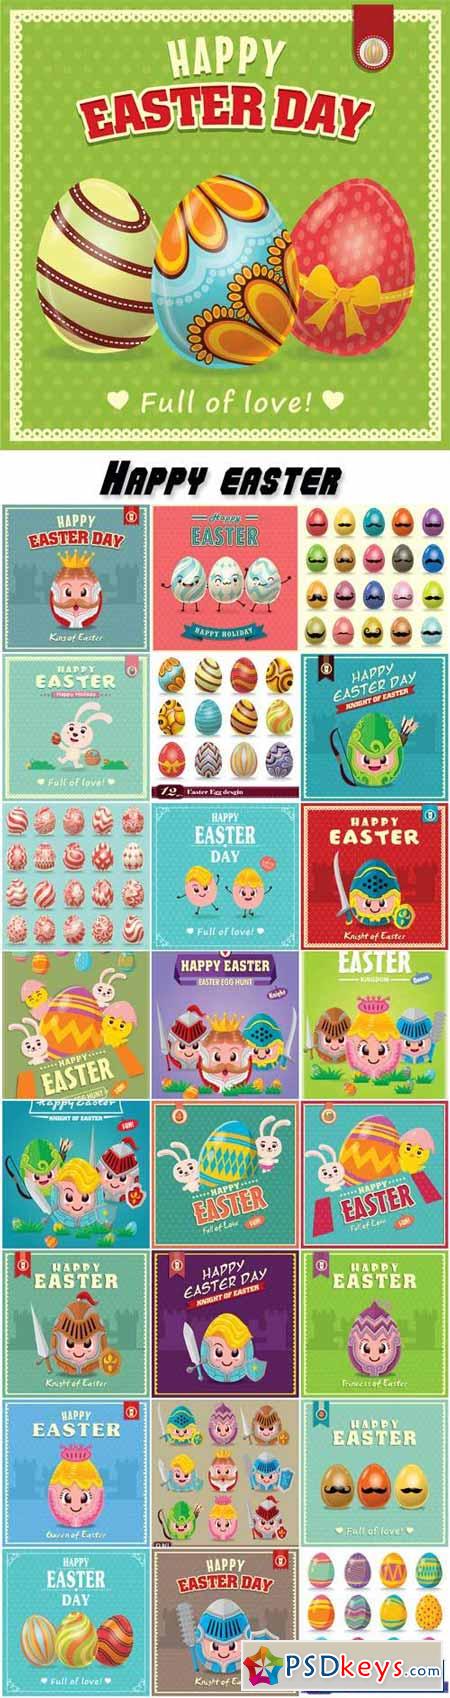 Vintage Easter egg poster design